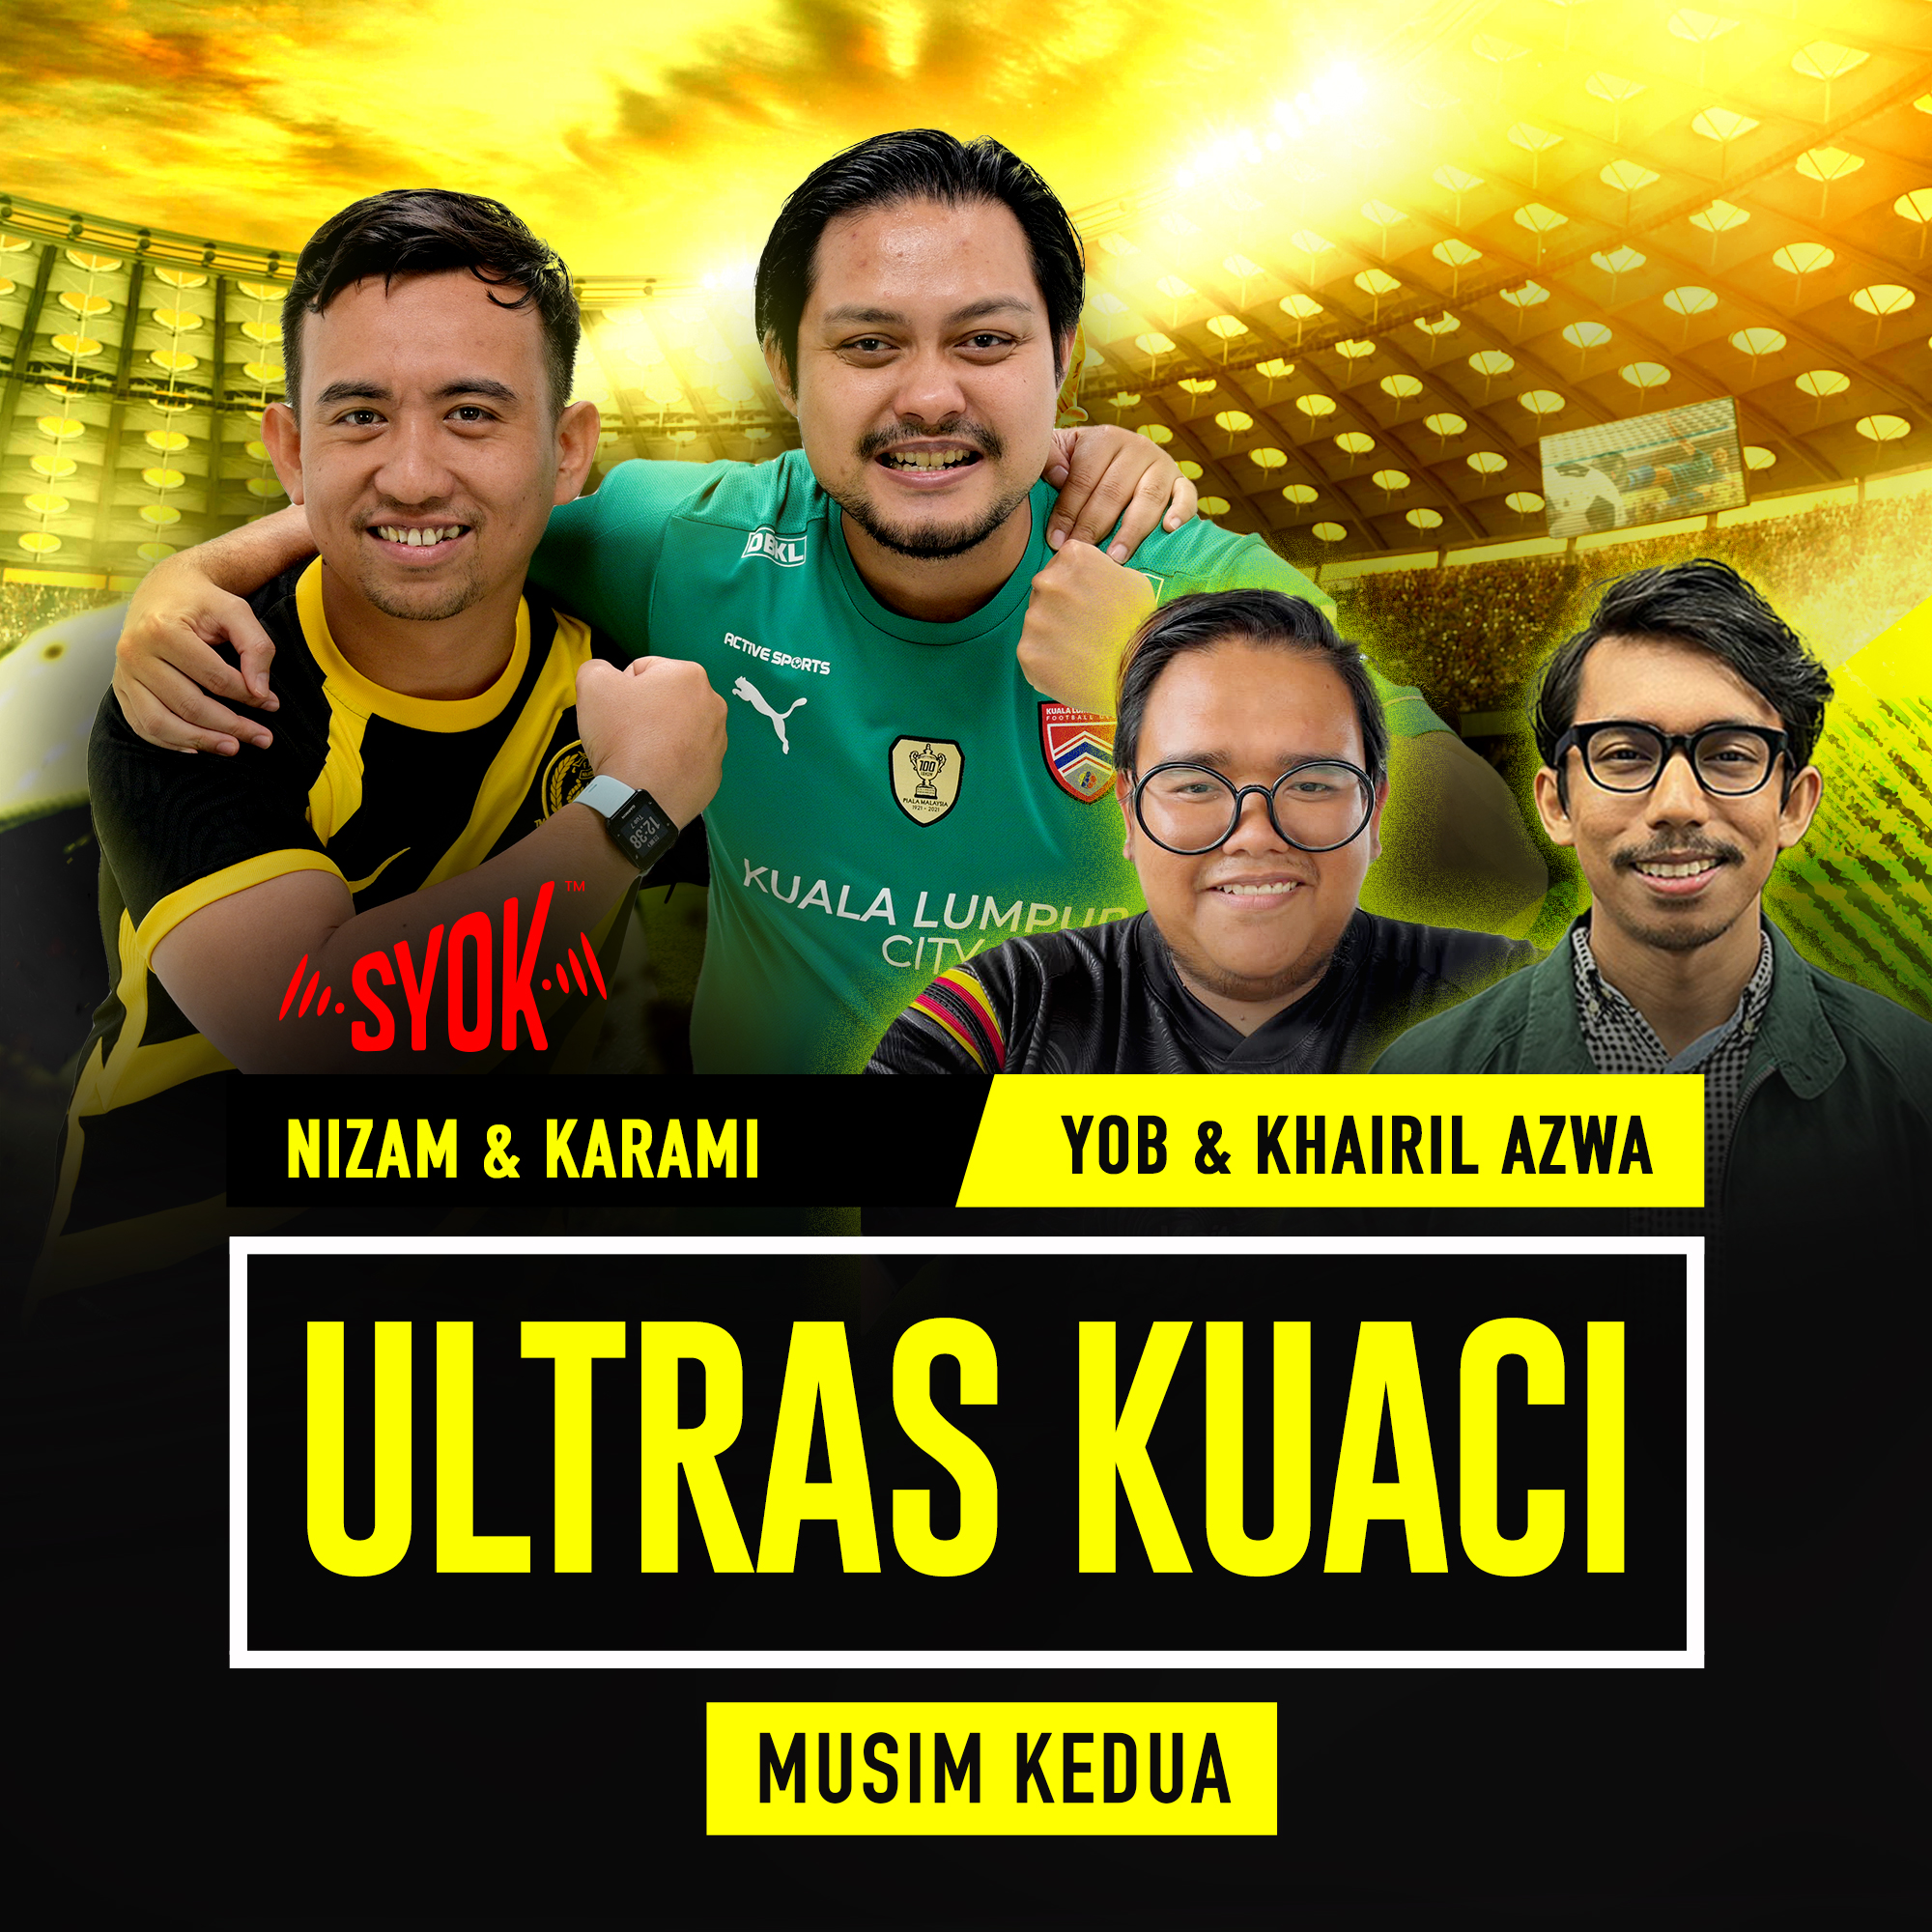 Dah Bersedia Kita Ke Piala Asia? | Ultras Kuaci Musim Kedua EP18